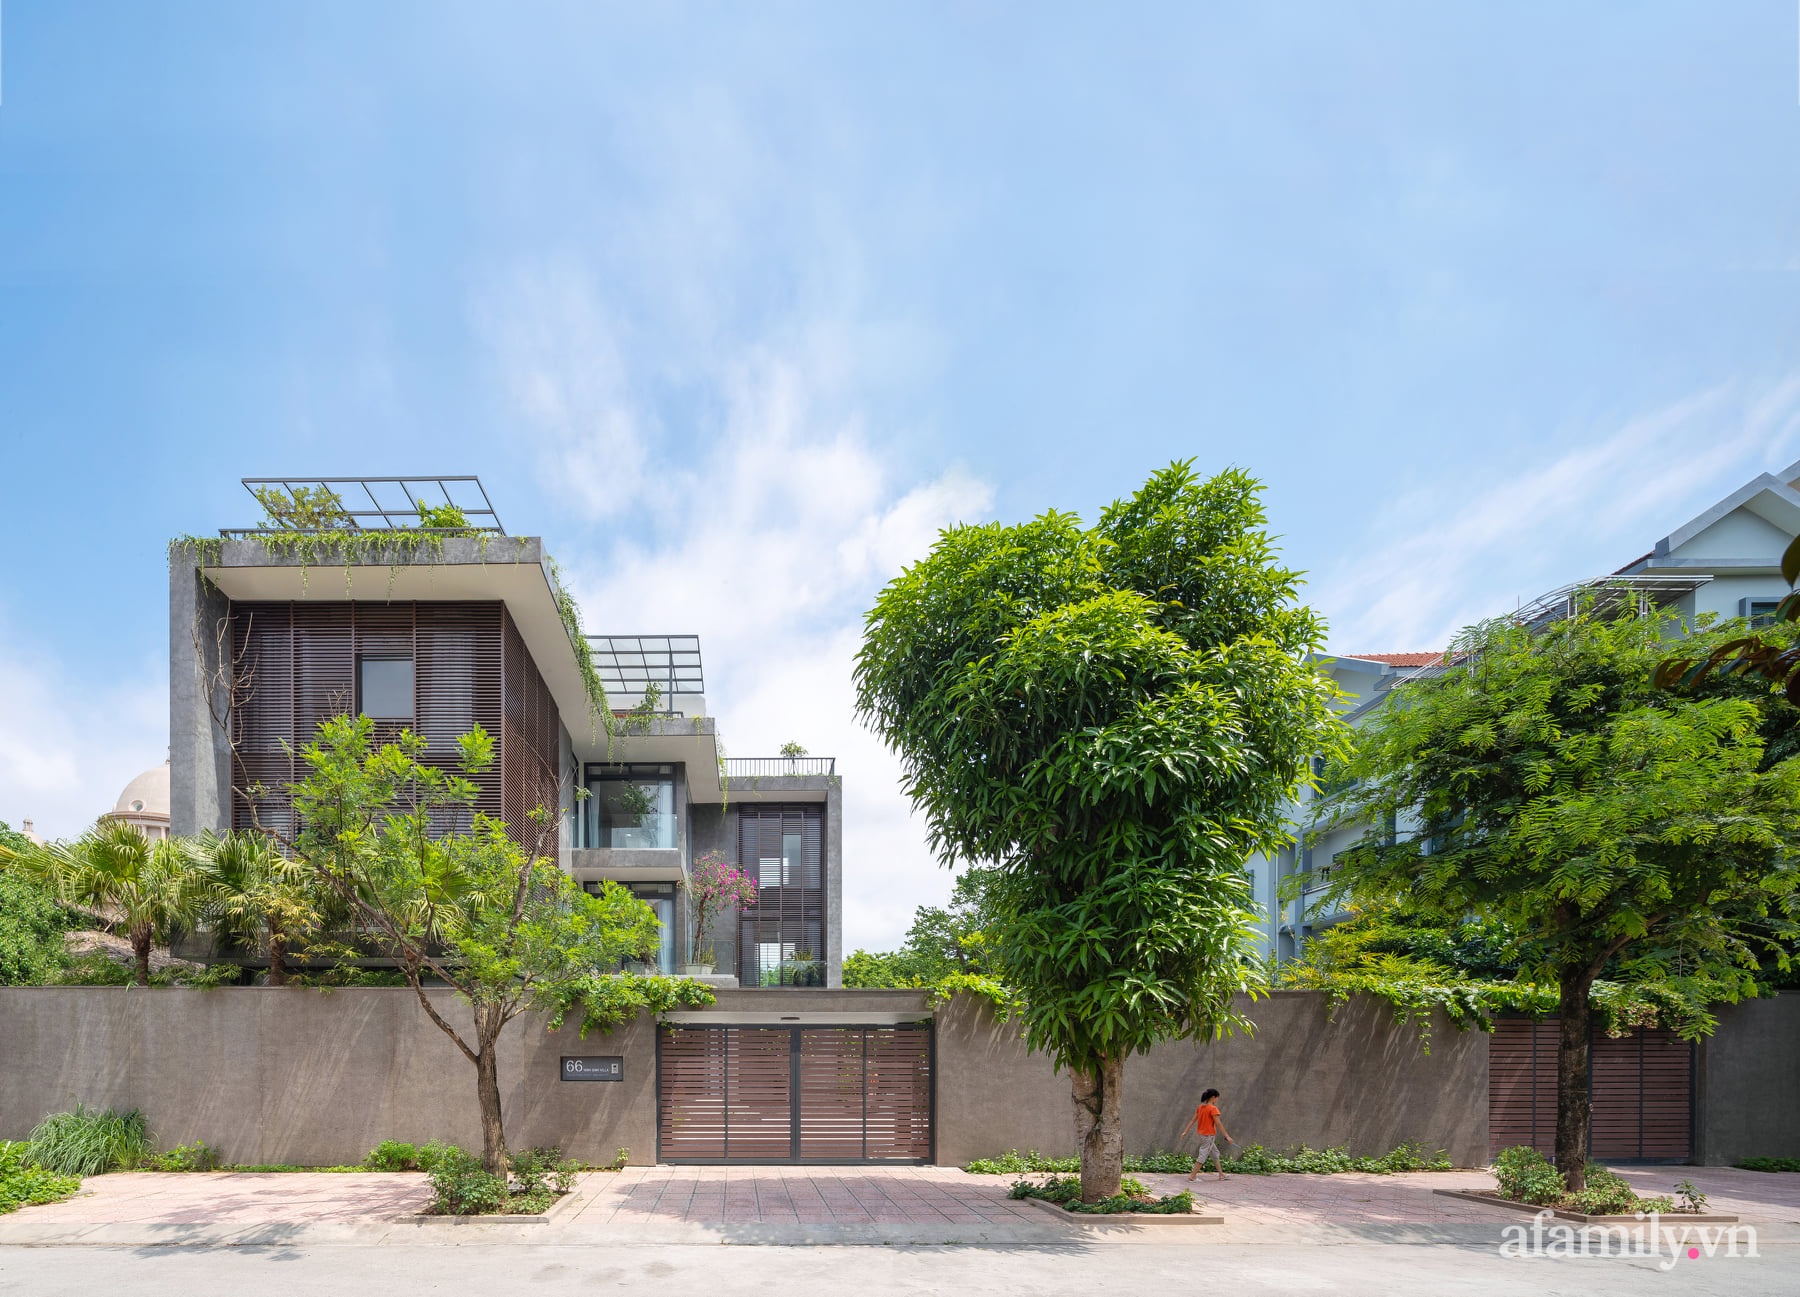 Ngôi nhà với thiết kế hiện đại thu trọn vẻ đẹp của nhịp sống thường nhật ở thành phố Ninh Bình - Ảnh 2.